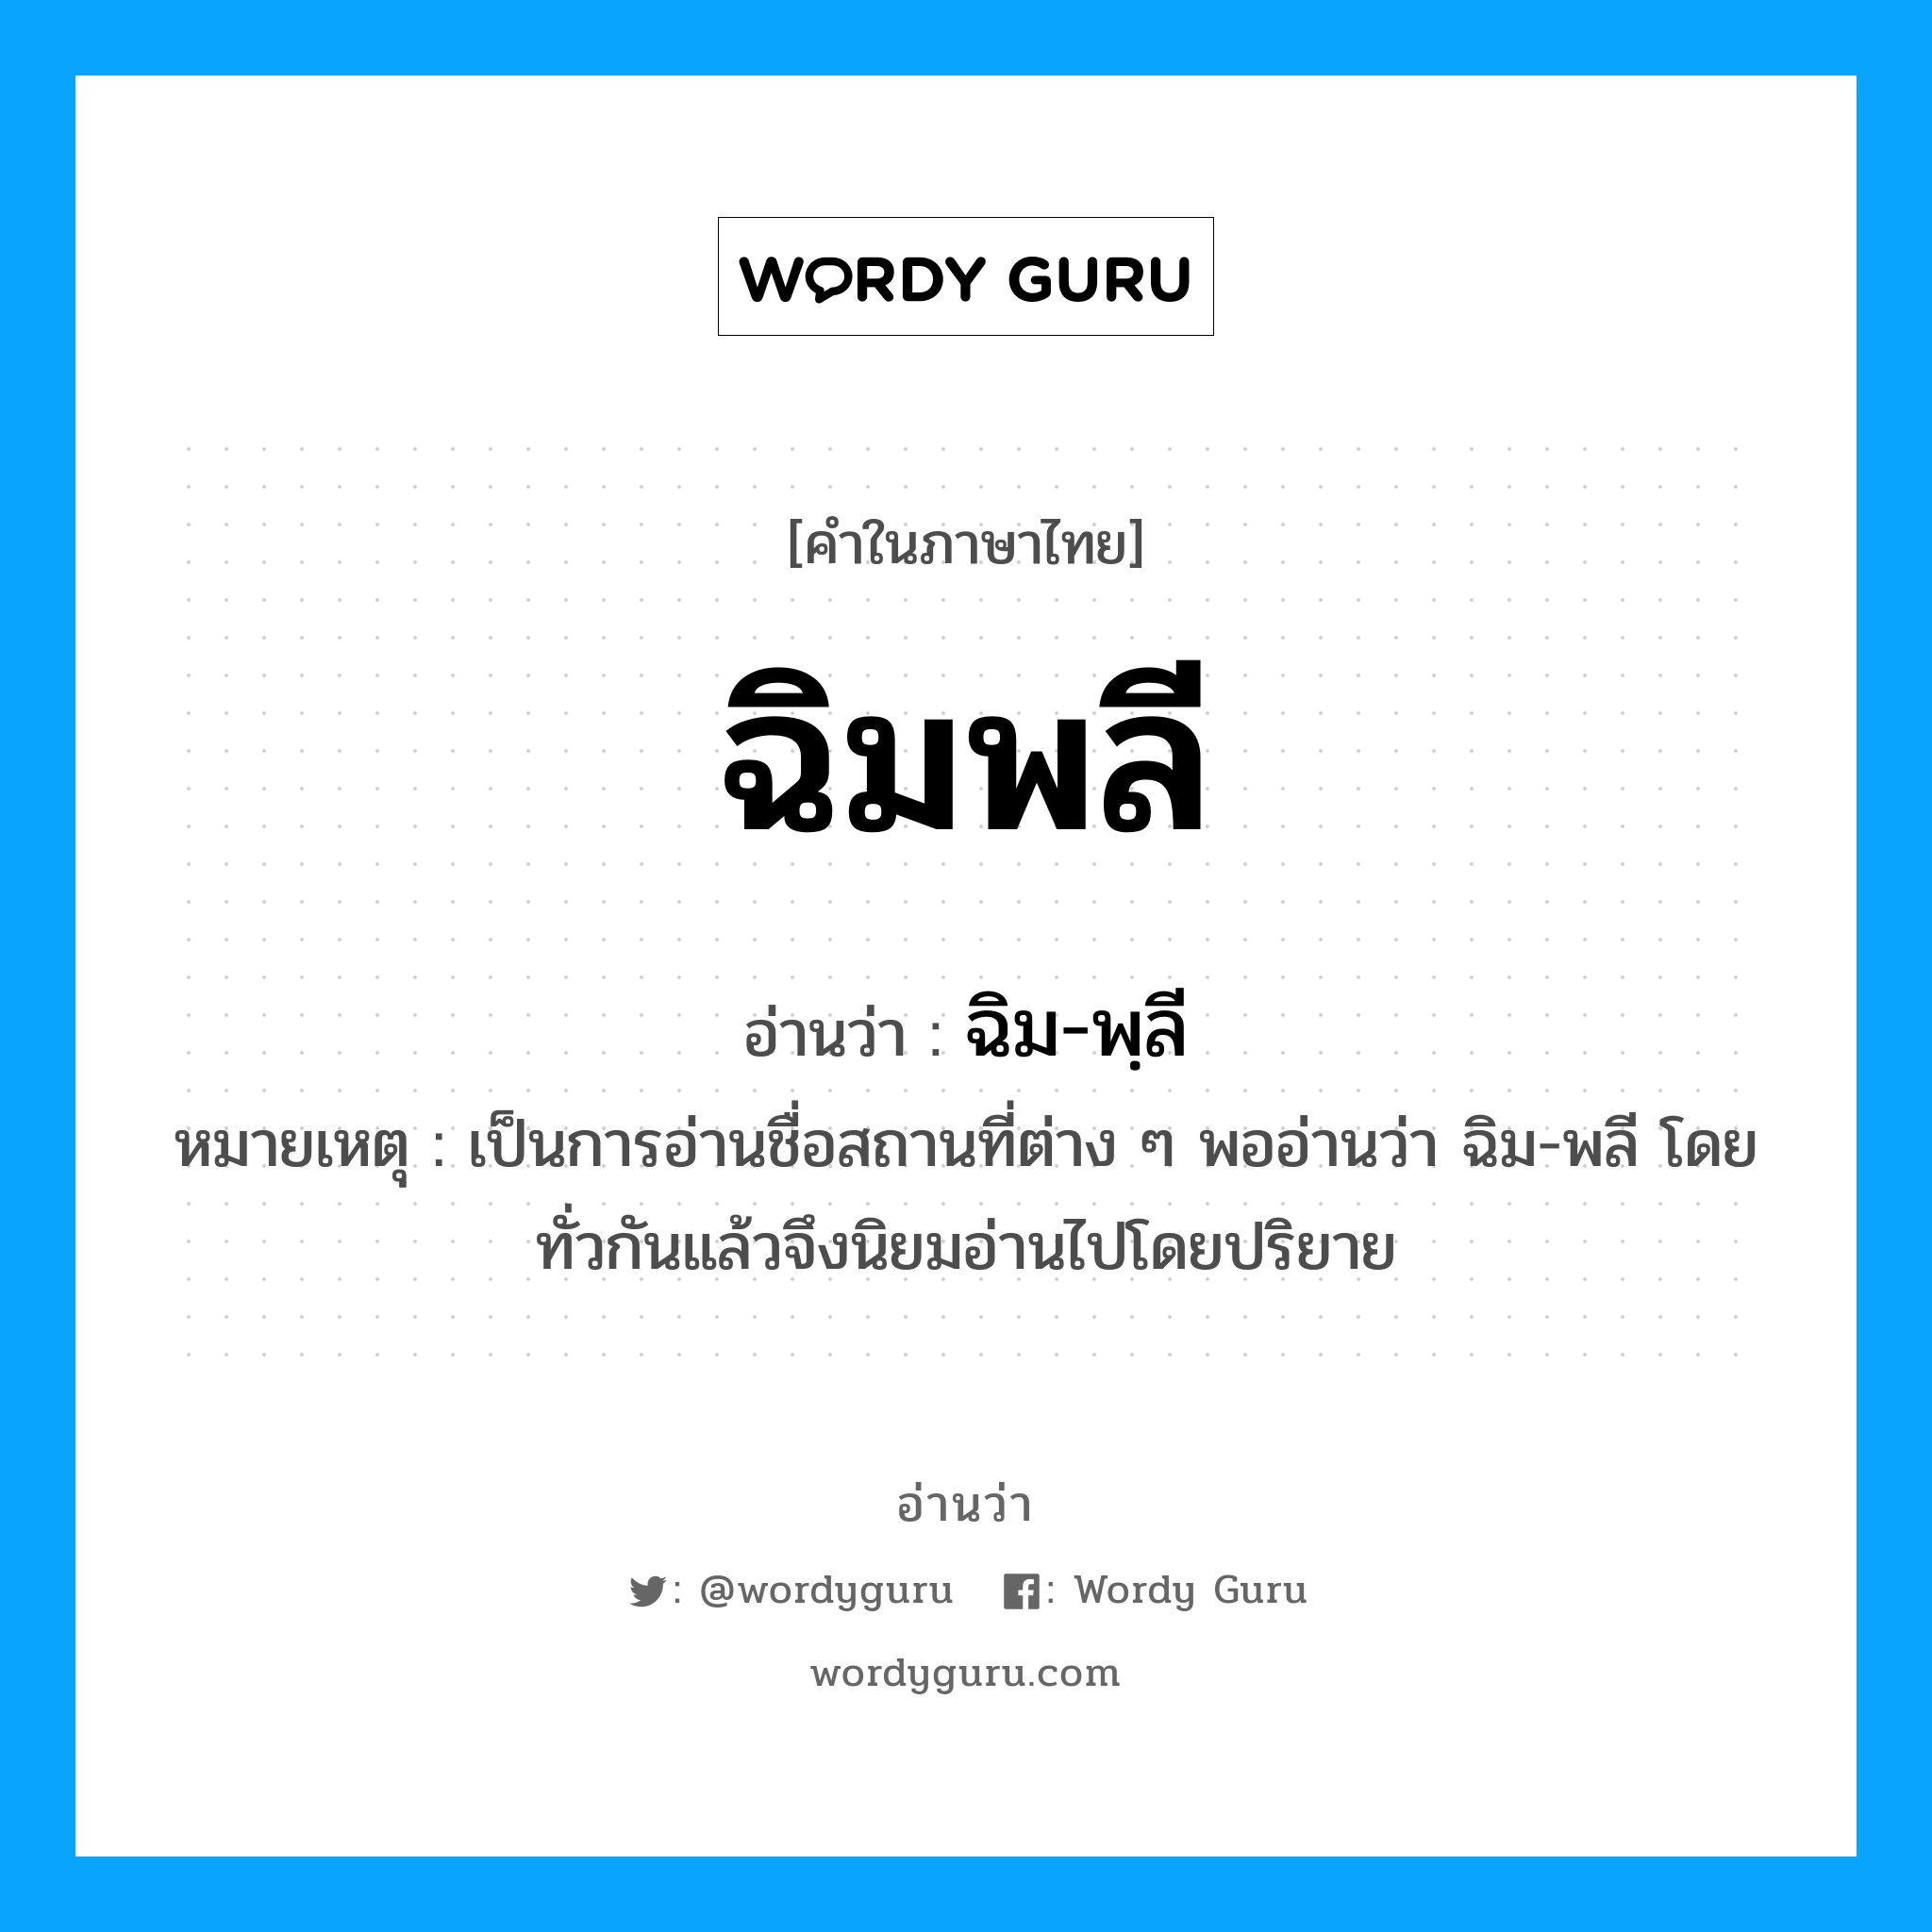 ฉิม-พฺลี เป็นคำอ่านของคำไหน?, คำในภาษาไทย ฉิม-พฺลี อ่านว่า ฉิมพลี หมวด สถานที่ หมายเหตุ เป็นการอ่านชื่อสถานที่ต่าง ๆ พออ่านว่า ฉิม-พลี โดยทั่วกันแล้วจึงนิยมอ่านไปโดยปริยาย หมวด สถานที่